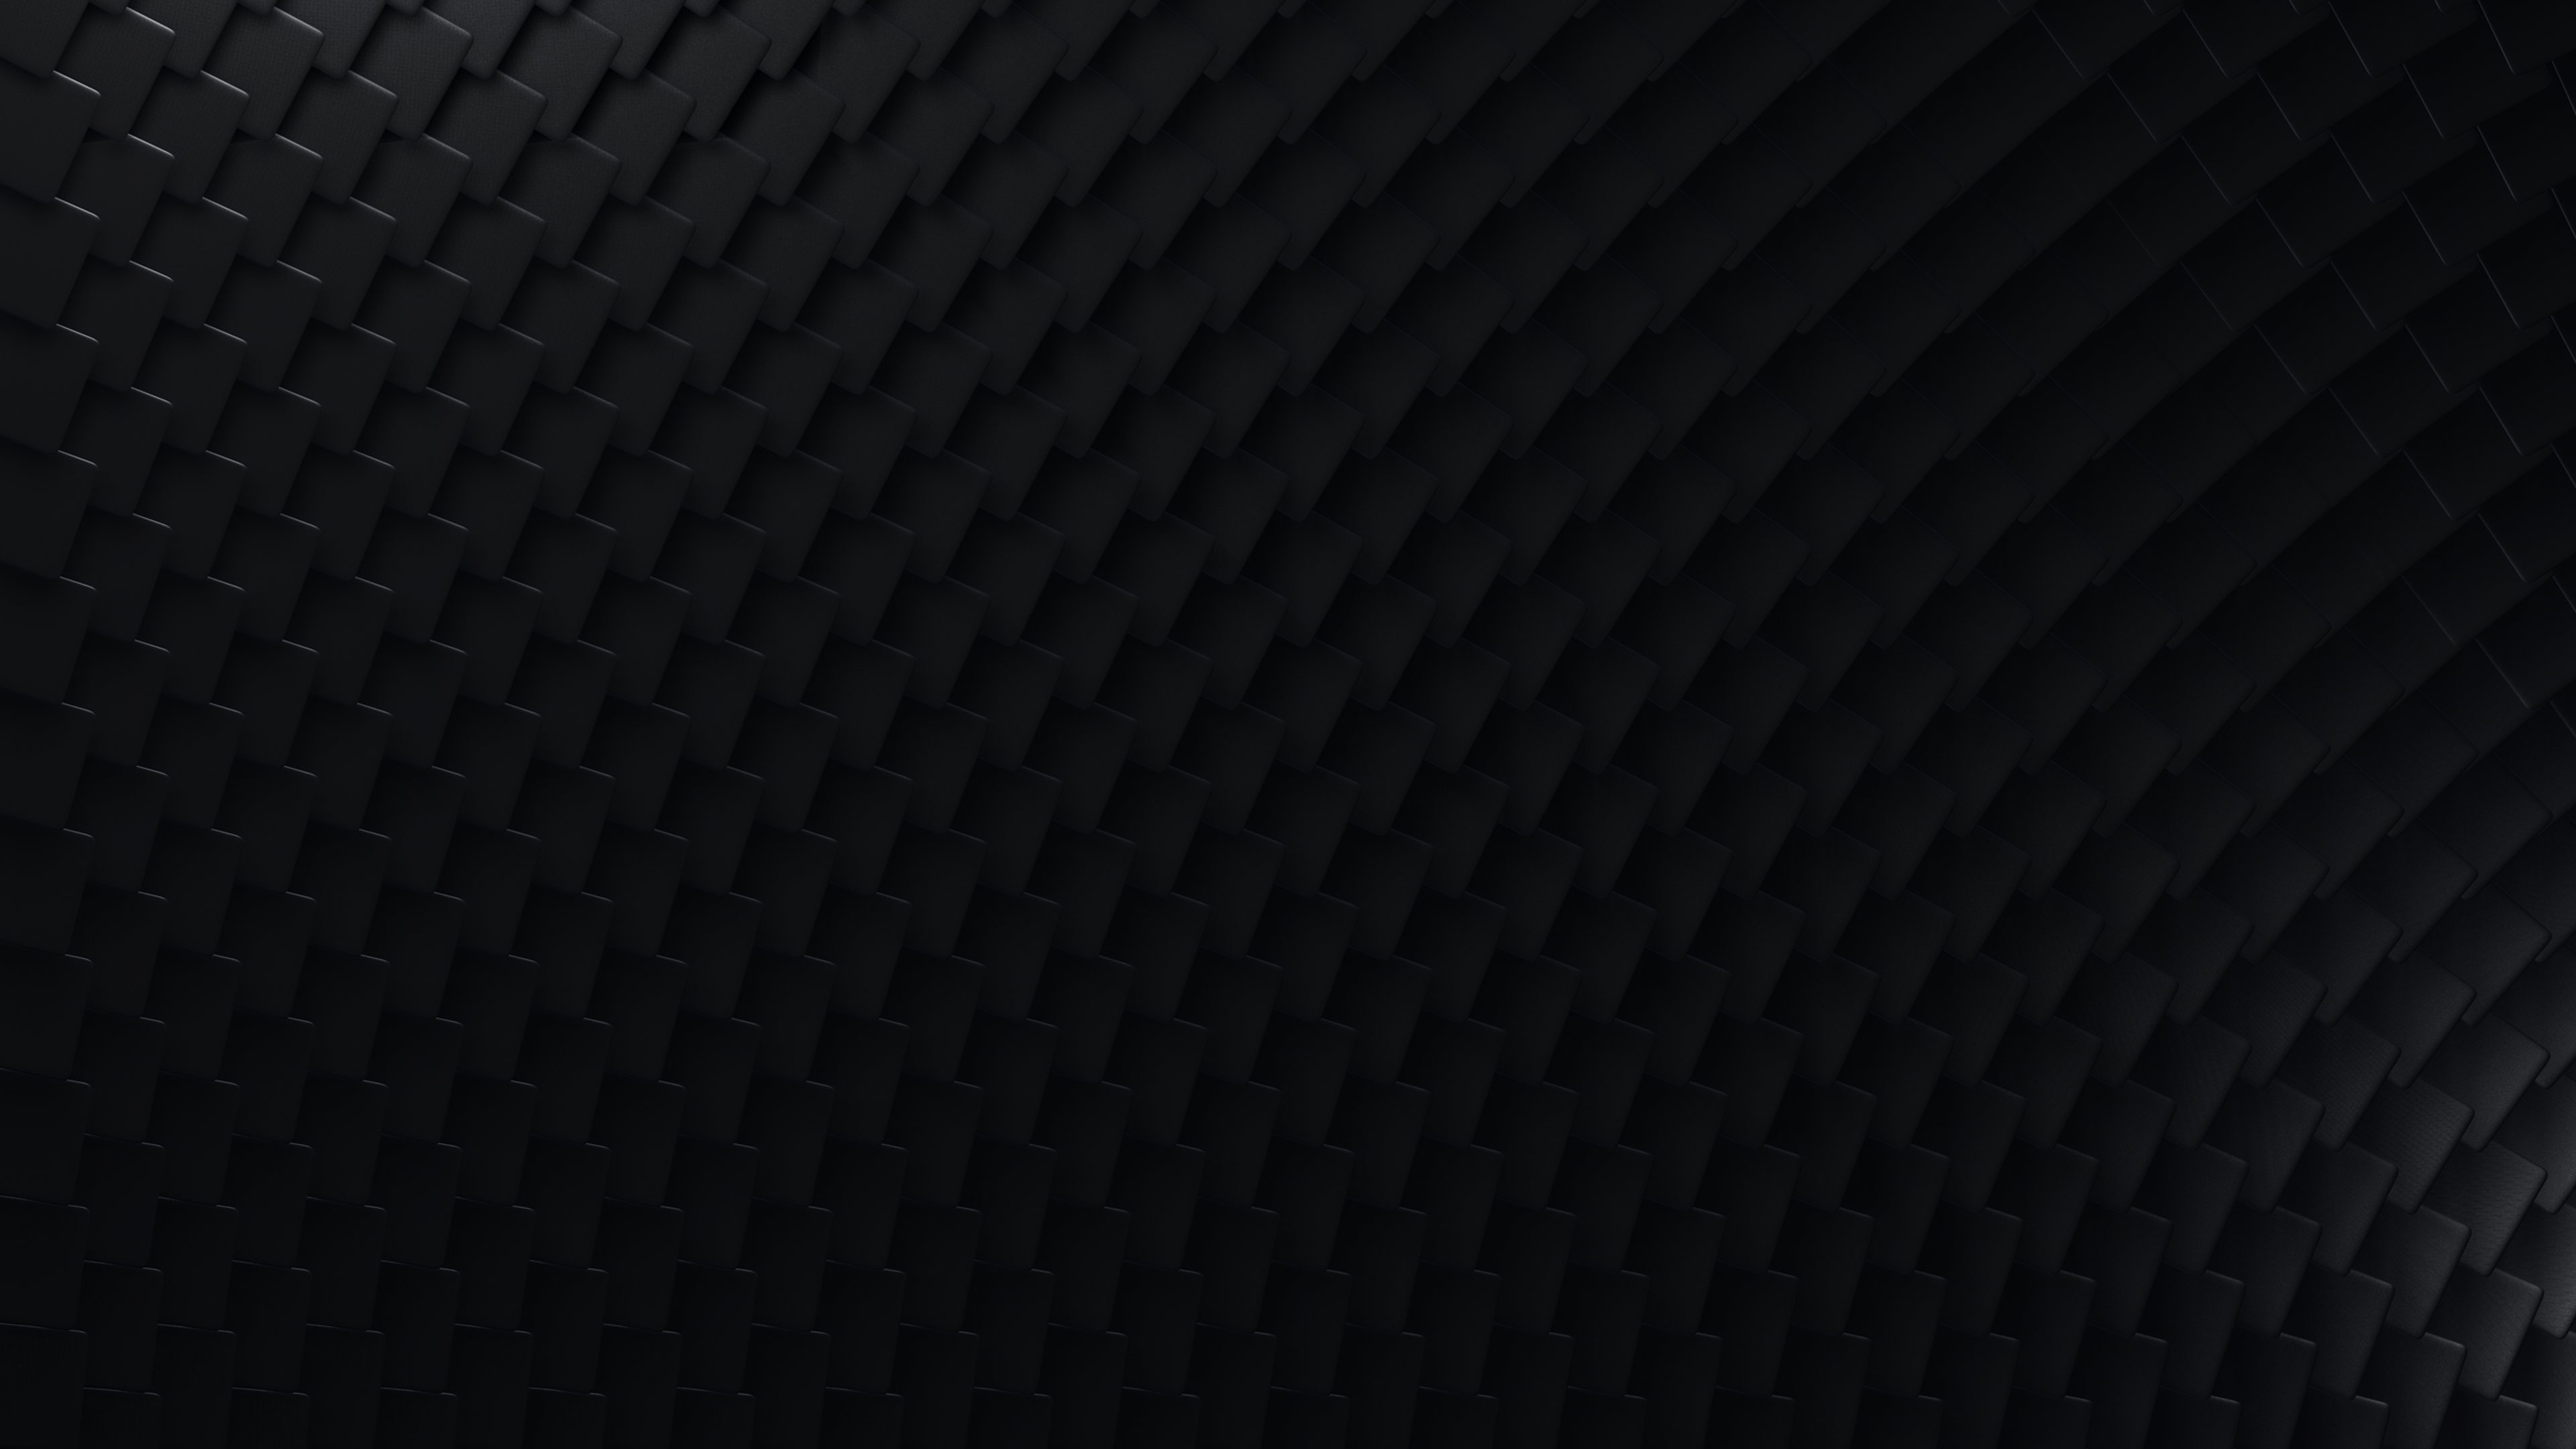 4k Dark Desktop Wallpapers Top Những Hình Ảnh Đẹp